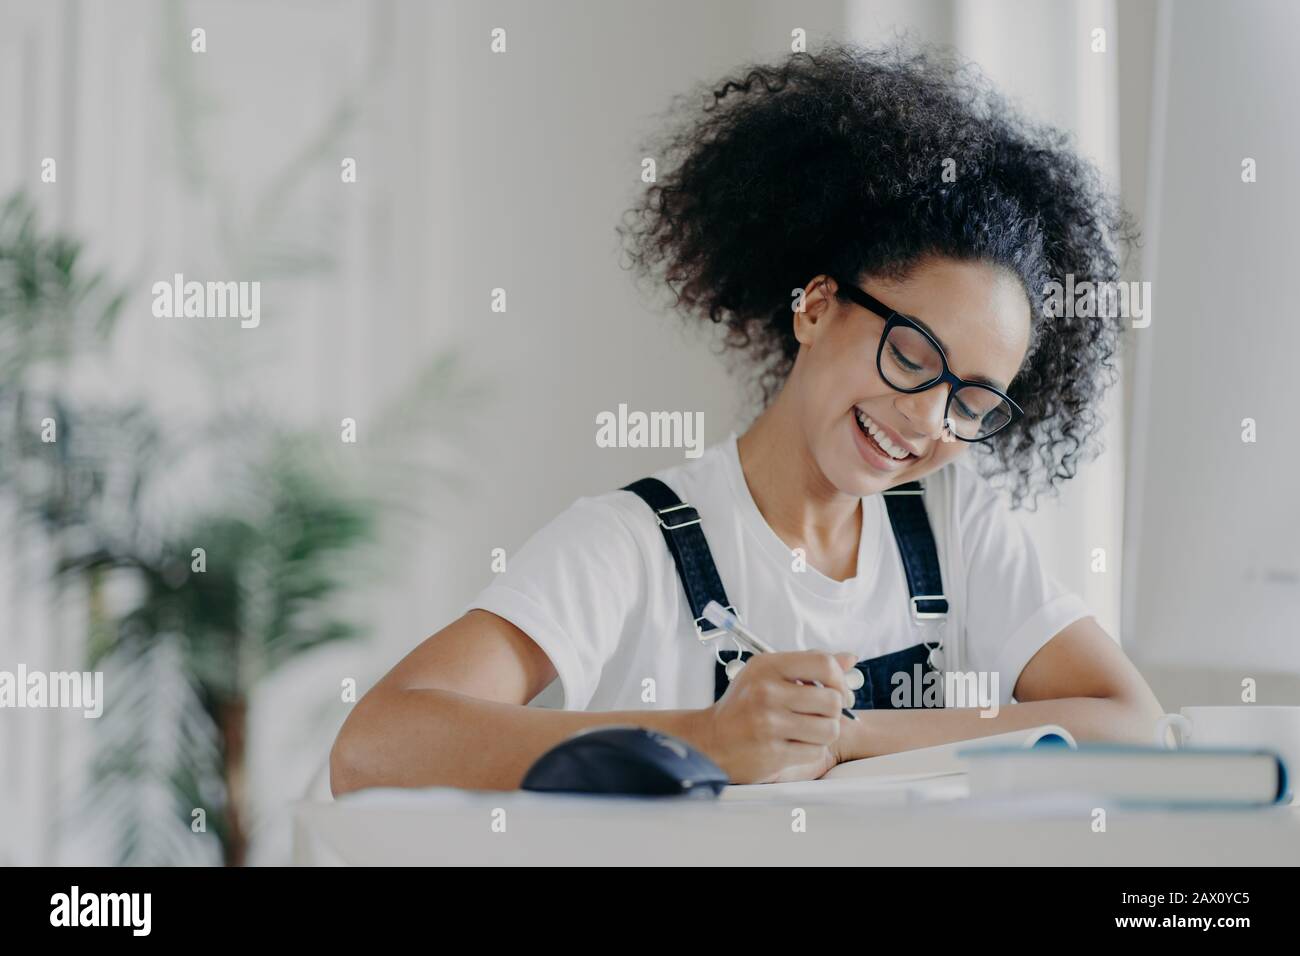 Die fröhliche afro-amerikanische Studentin schreibt Informationen auf, bereitet sich auf Prüfungen vor, sitzt im feigen Raum, hat geschweifte dunkle Haare, trägt eine optische Brille WH Stockfoto